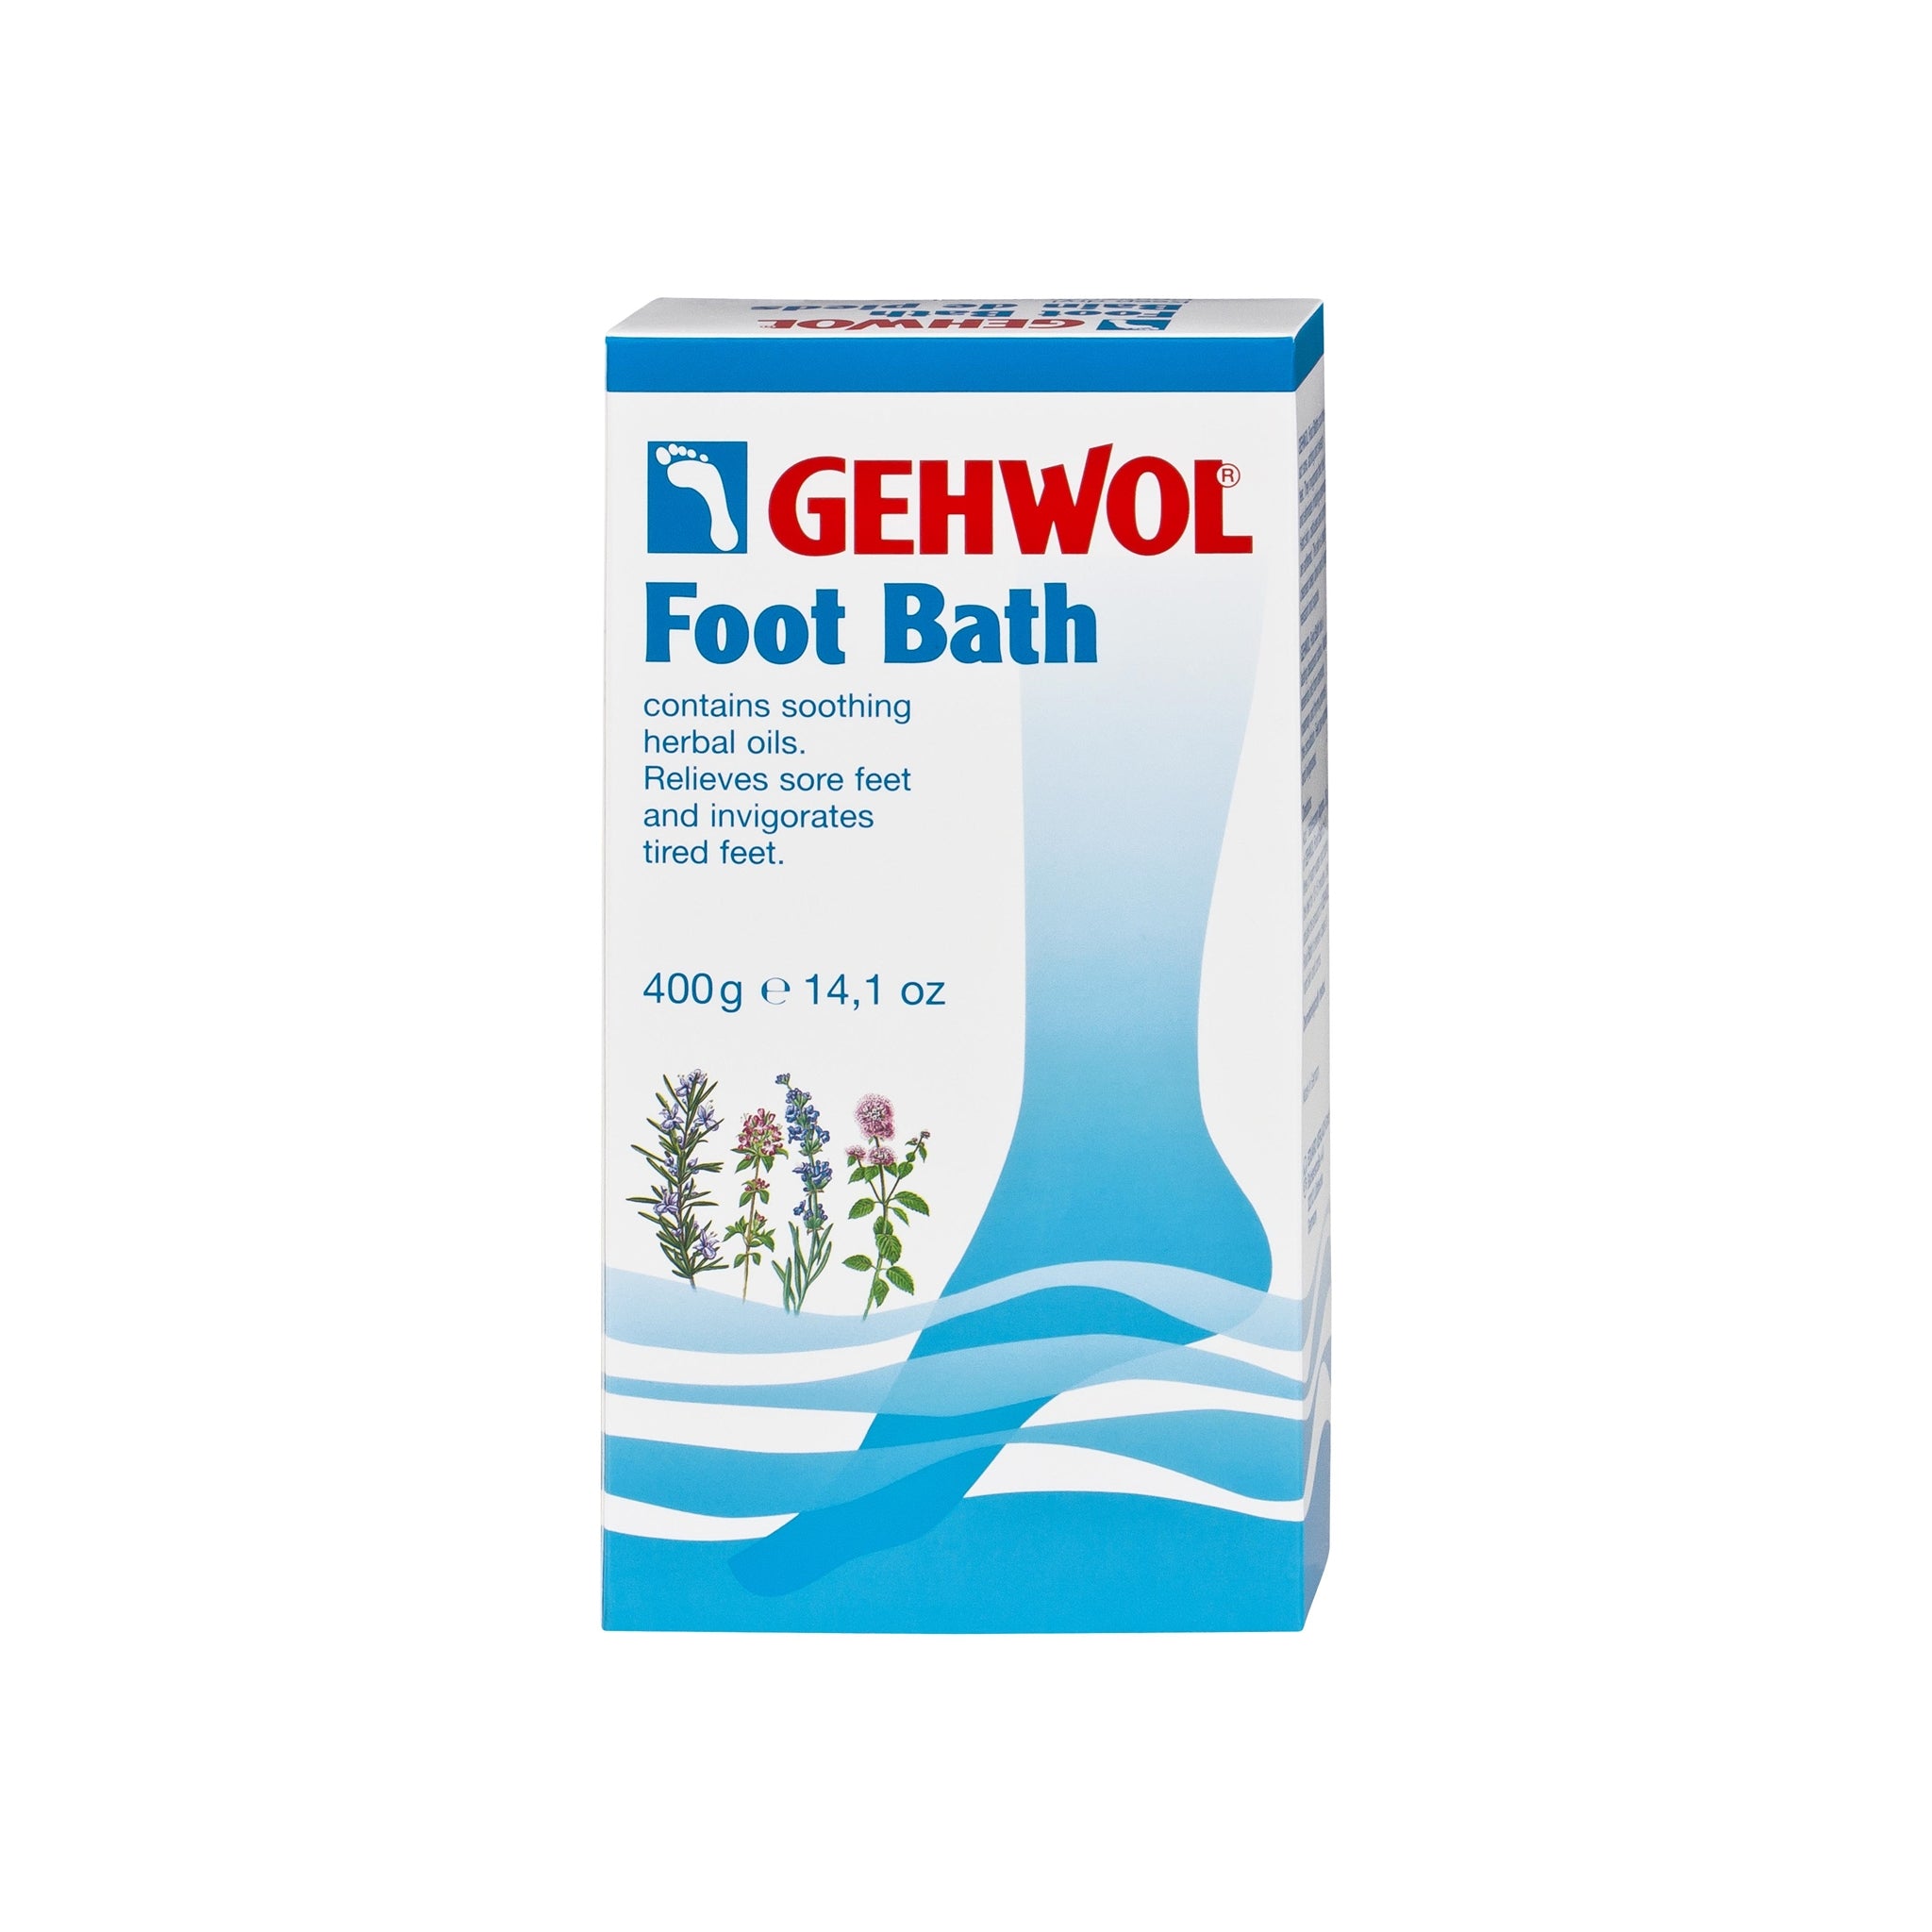 Gehwol Foot Bath